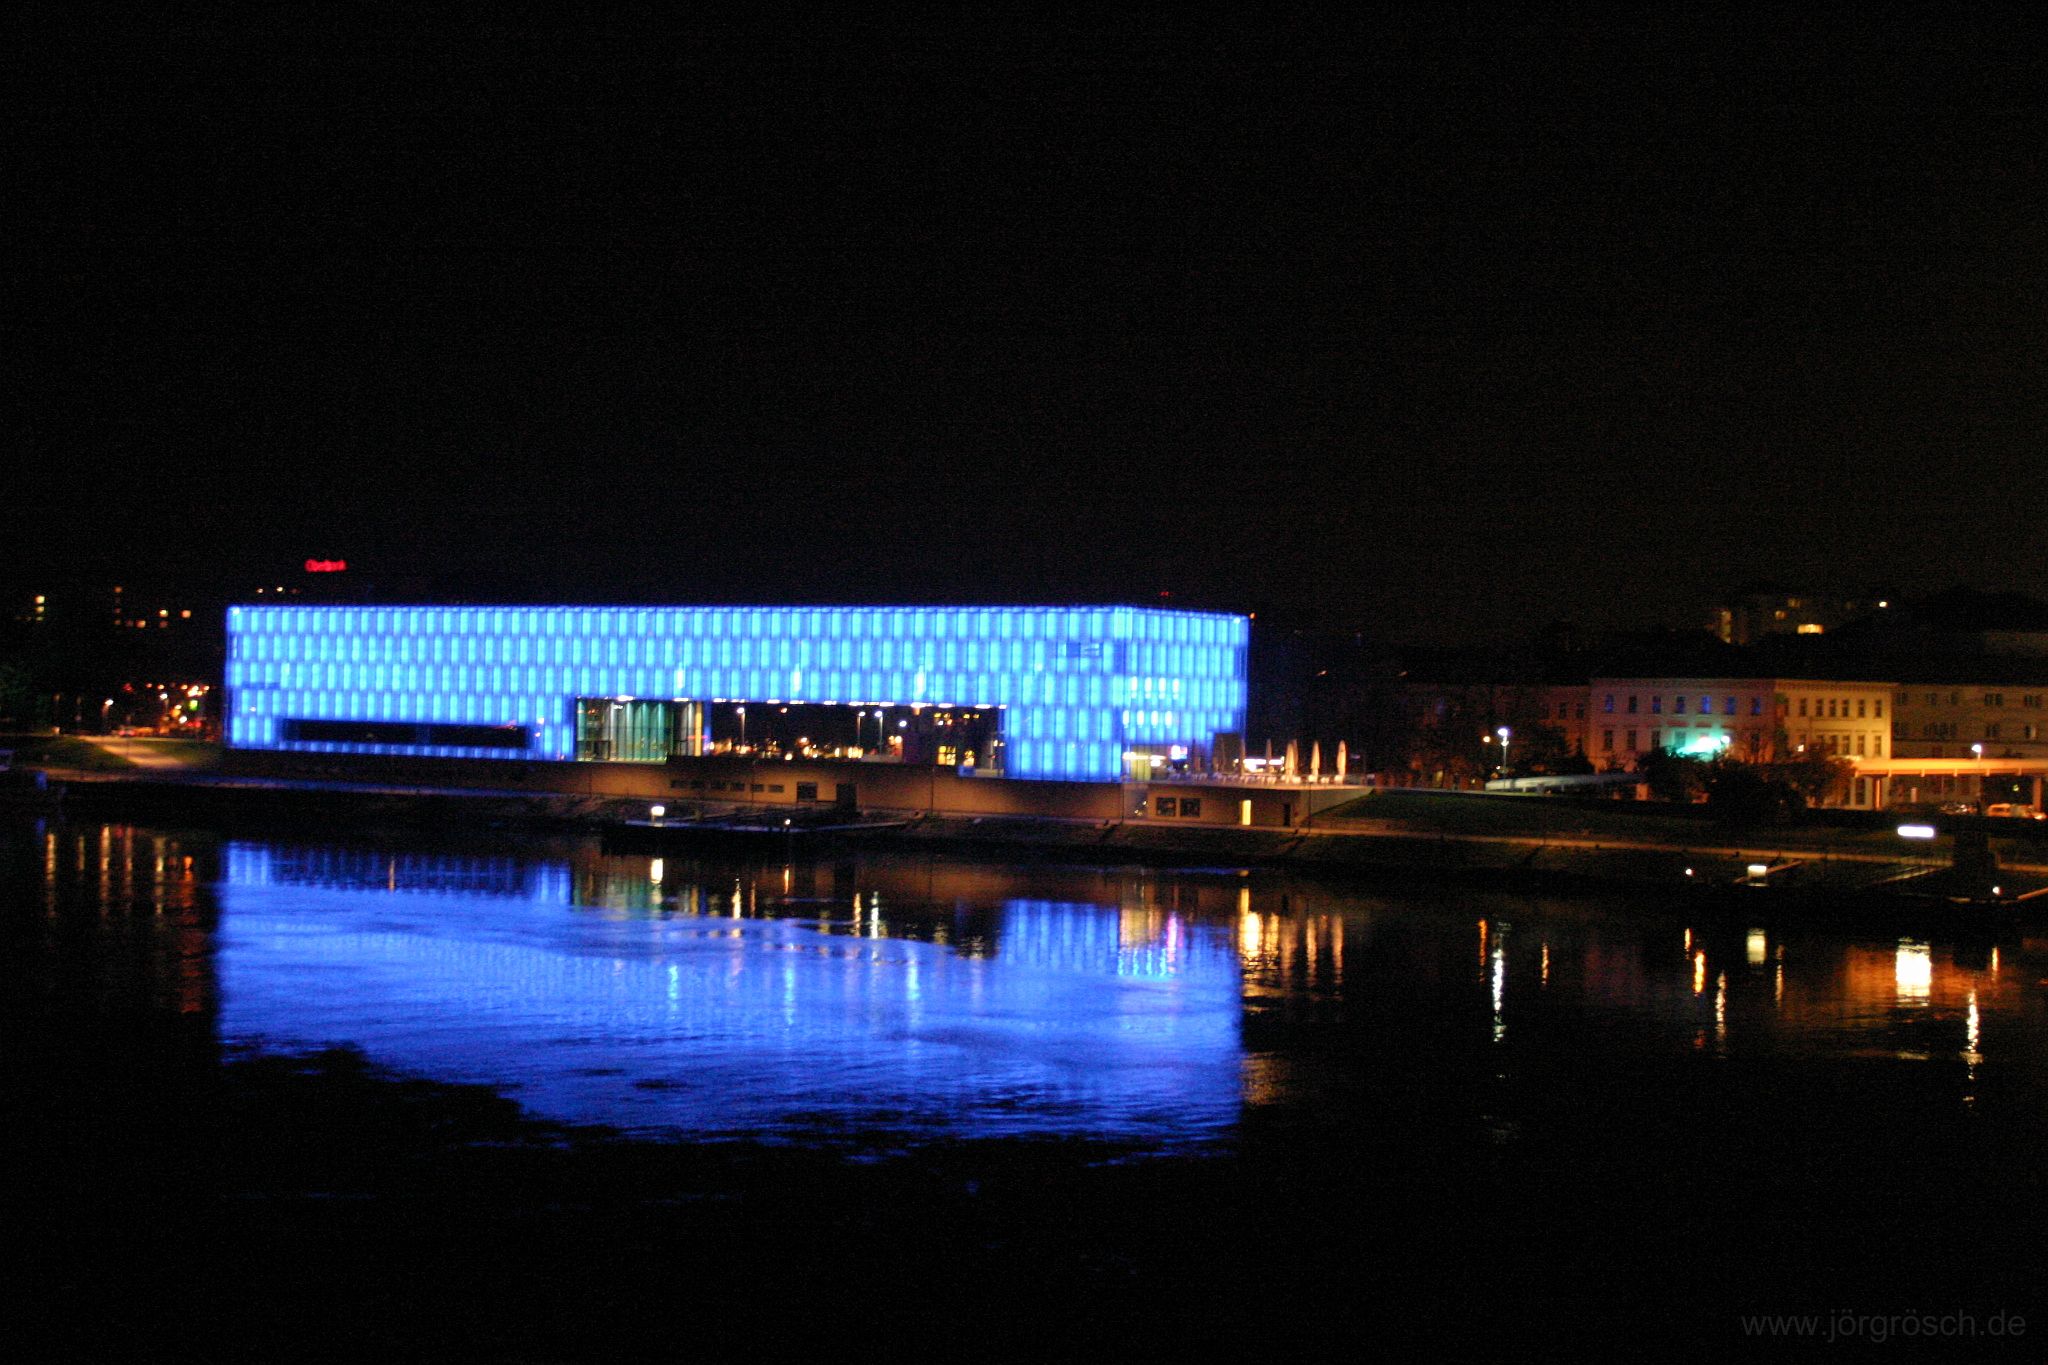 200510 linz.jpg - Linz bei Nacht